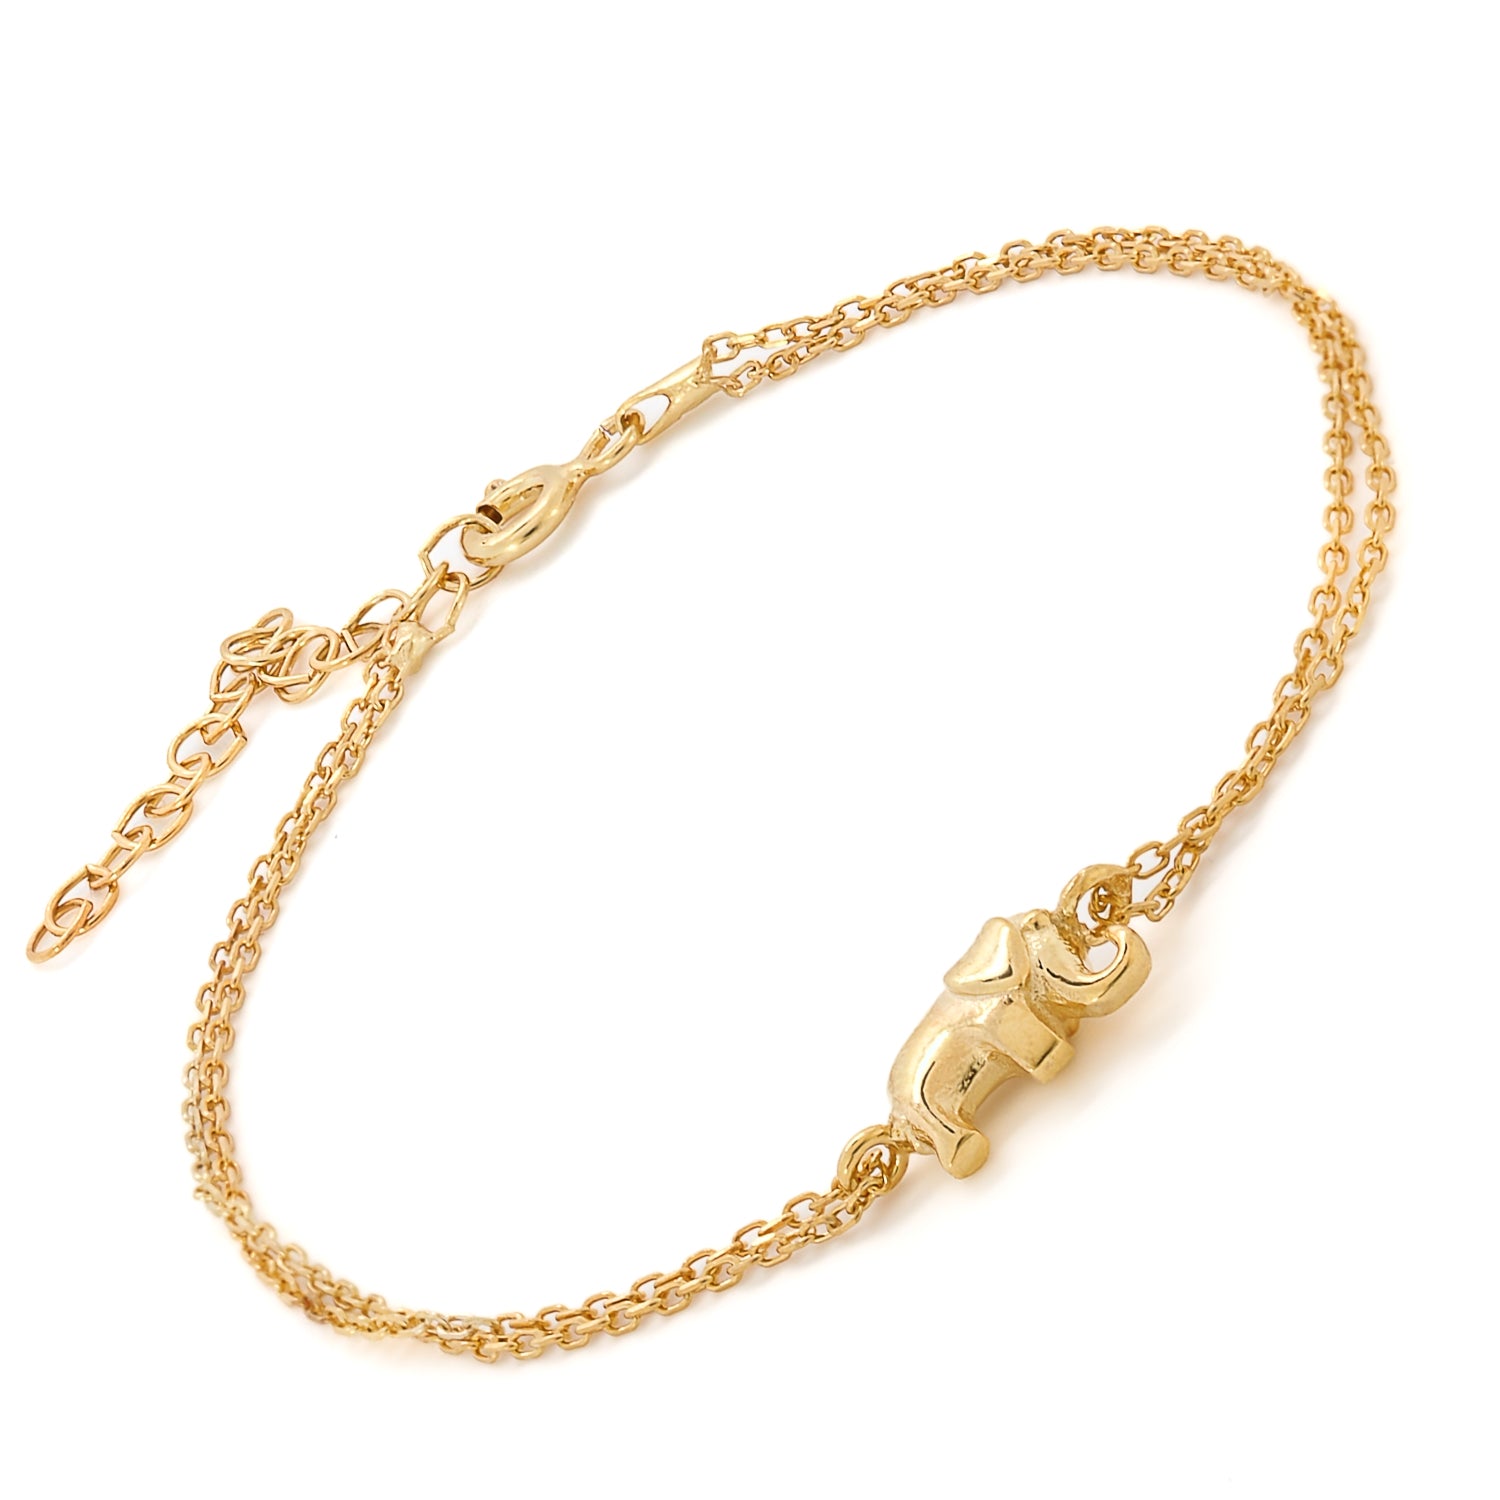 Elephant charm shines on gold-plated bracelet.